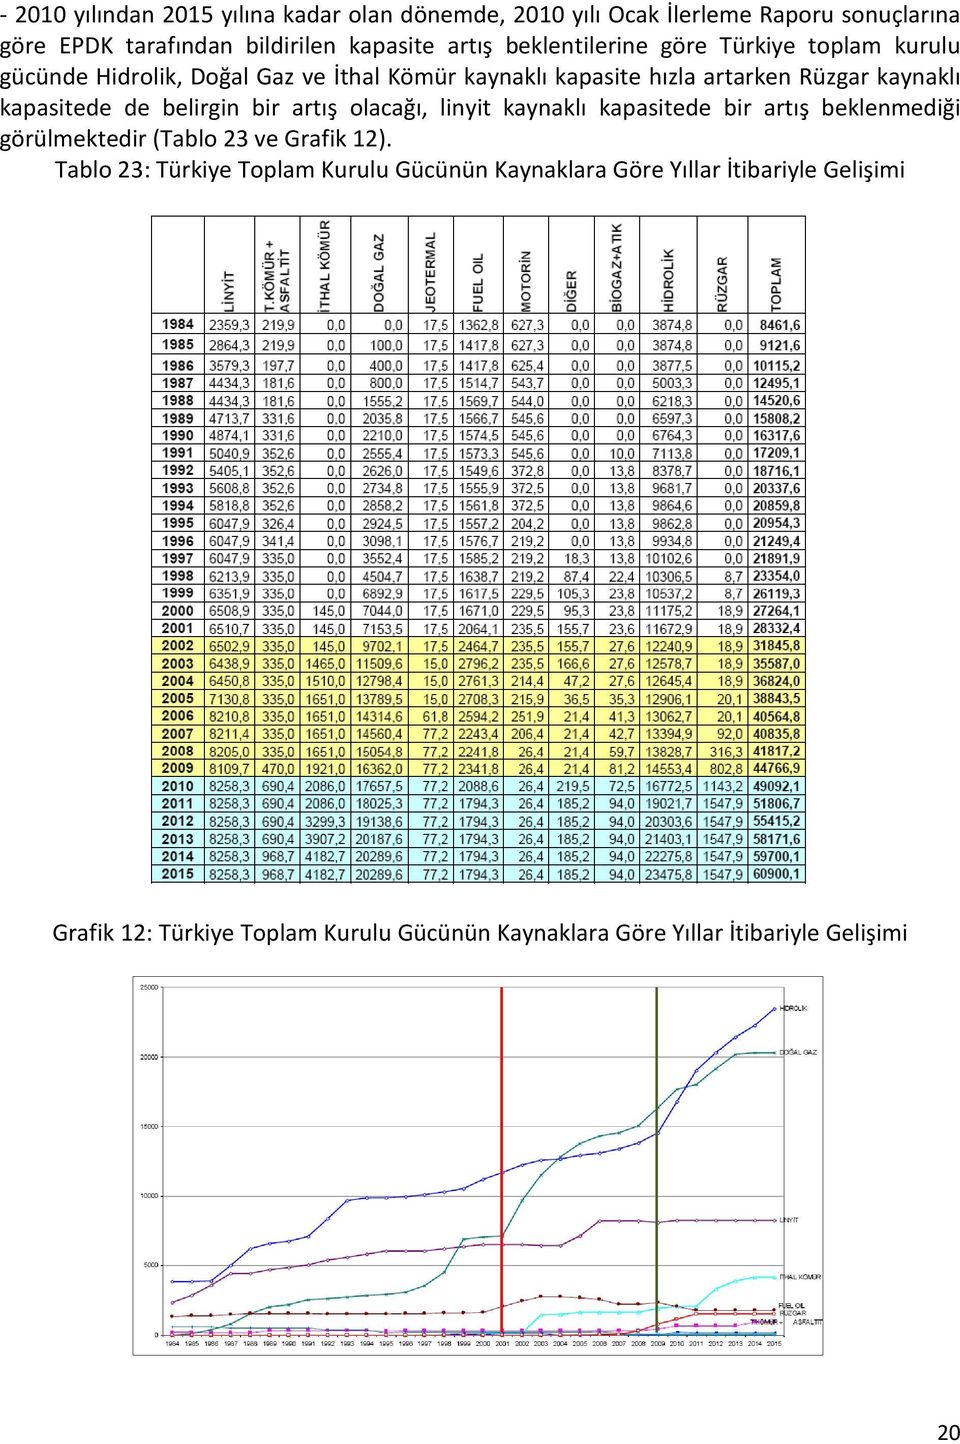 kapasitede de belirgin bir artış olacağı, linyit kaynaklı kapasitede bir artış beklenmediği görülmektedir (Tablo 23 ve Grafik 12).